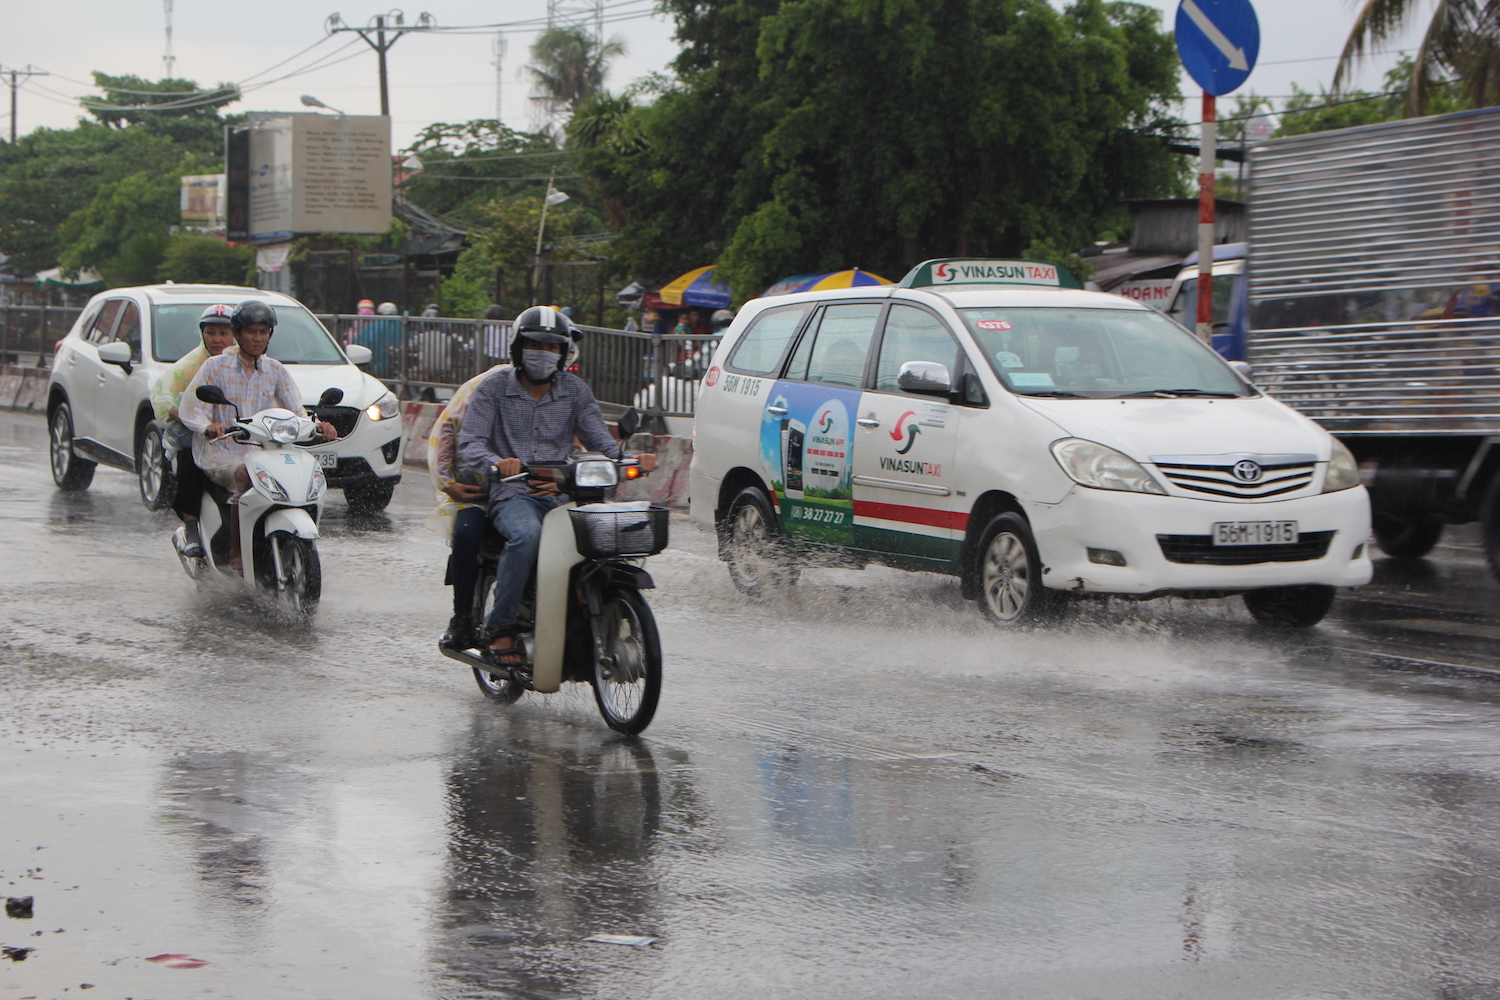 Nhiều người đi đường bị bất ngờ vì cơn mưa nên không chuẩn bị áo mưa từ trước - Ảnh: Phạm Hữu